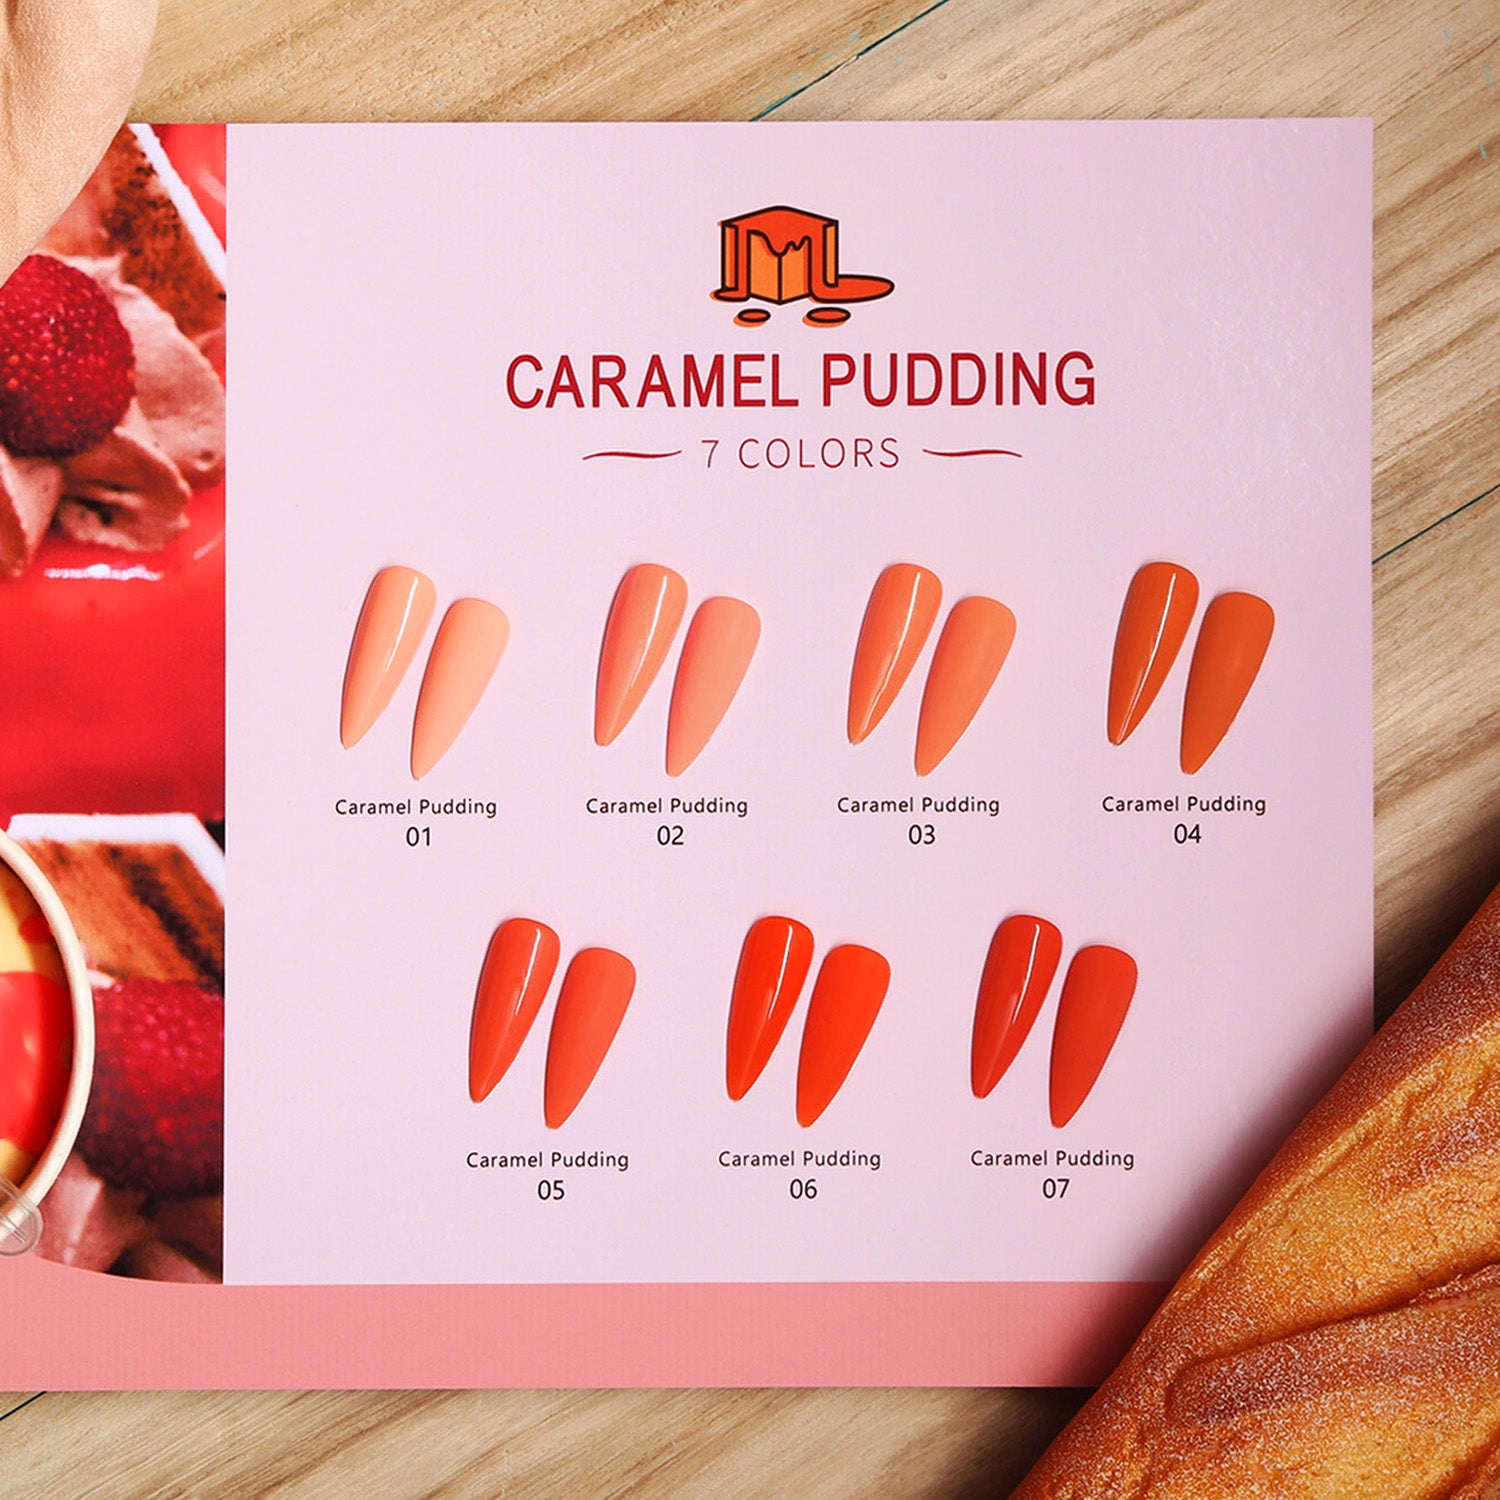 Caramel Pudding Series